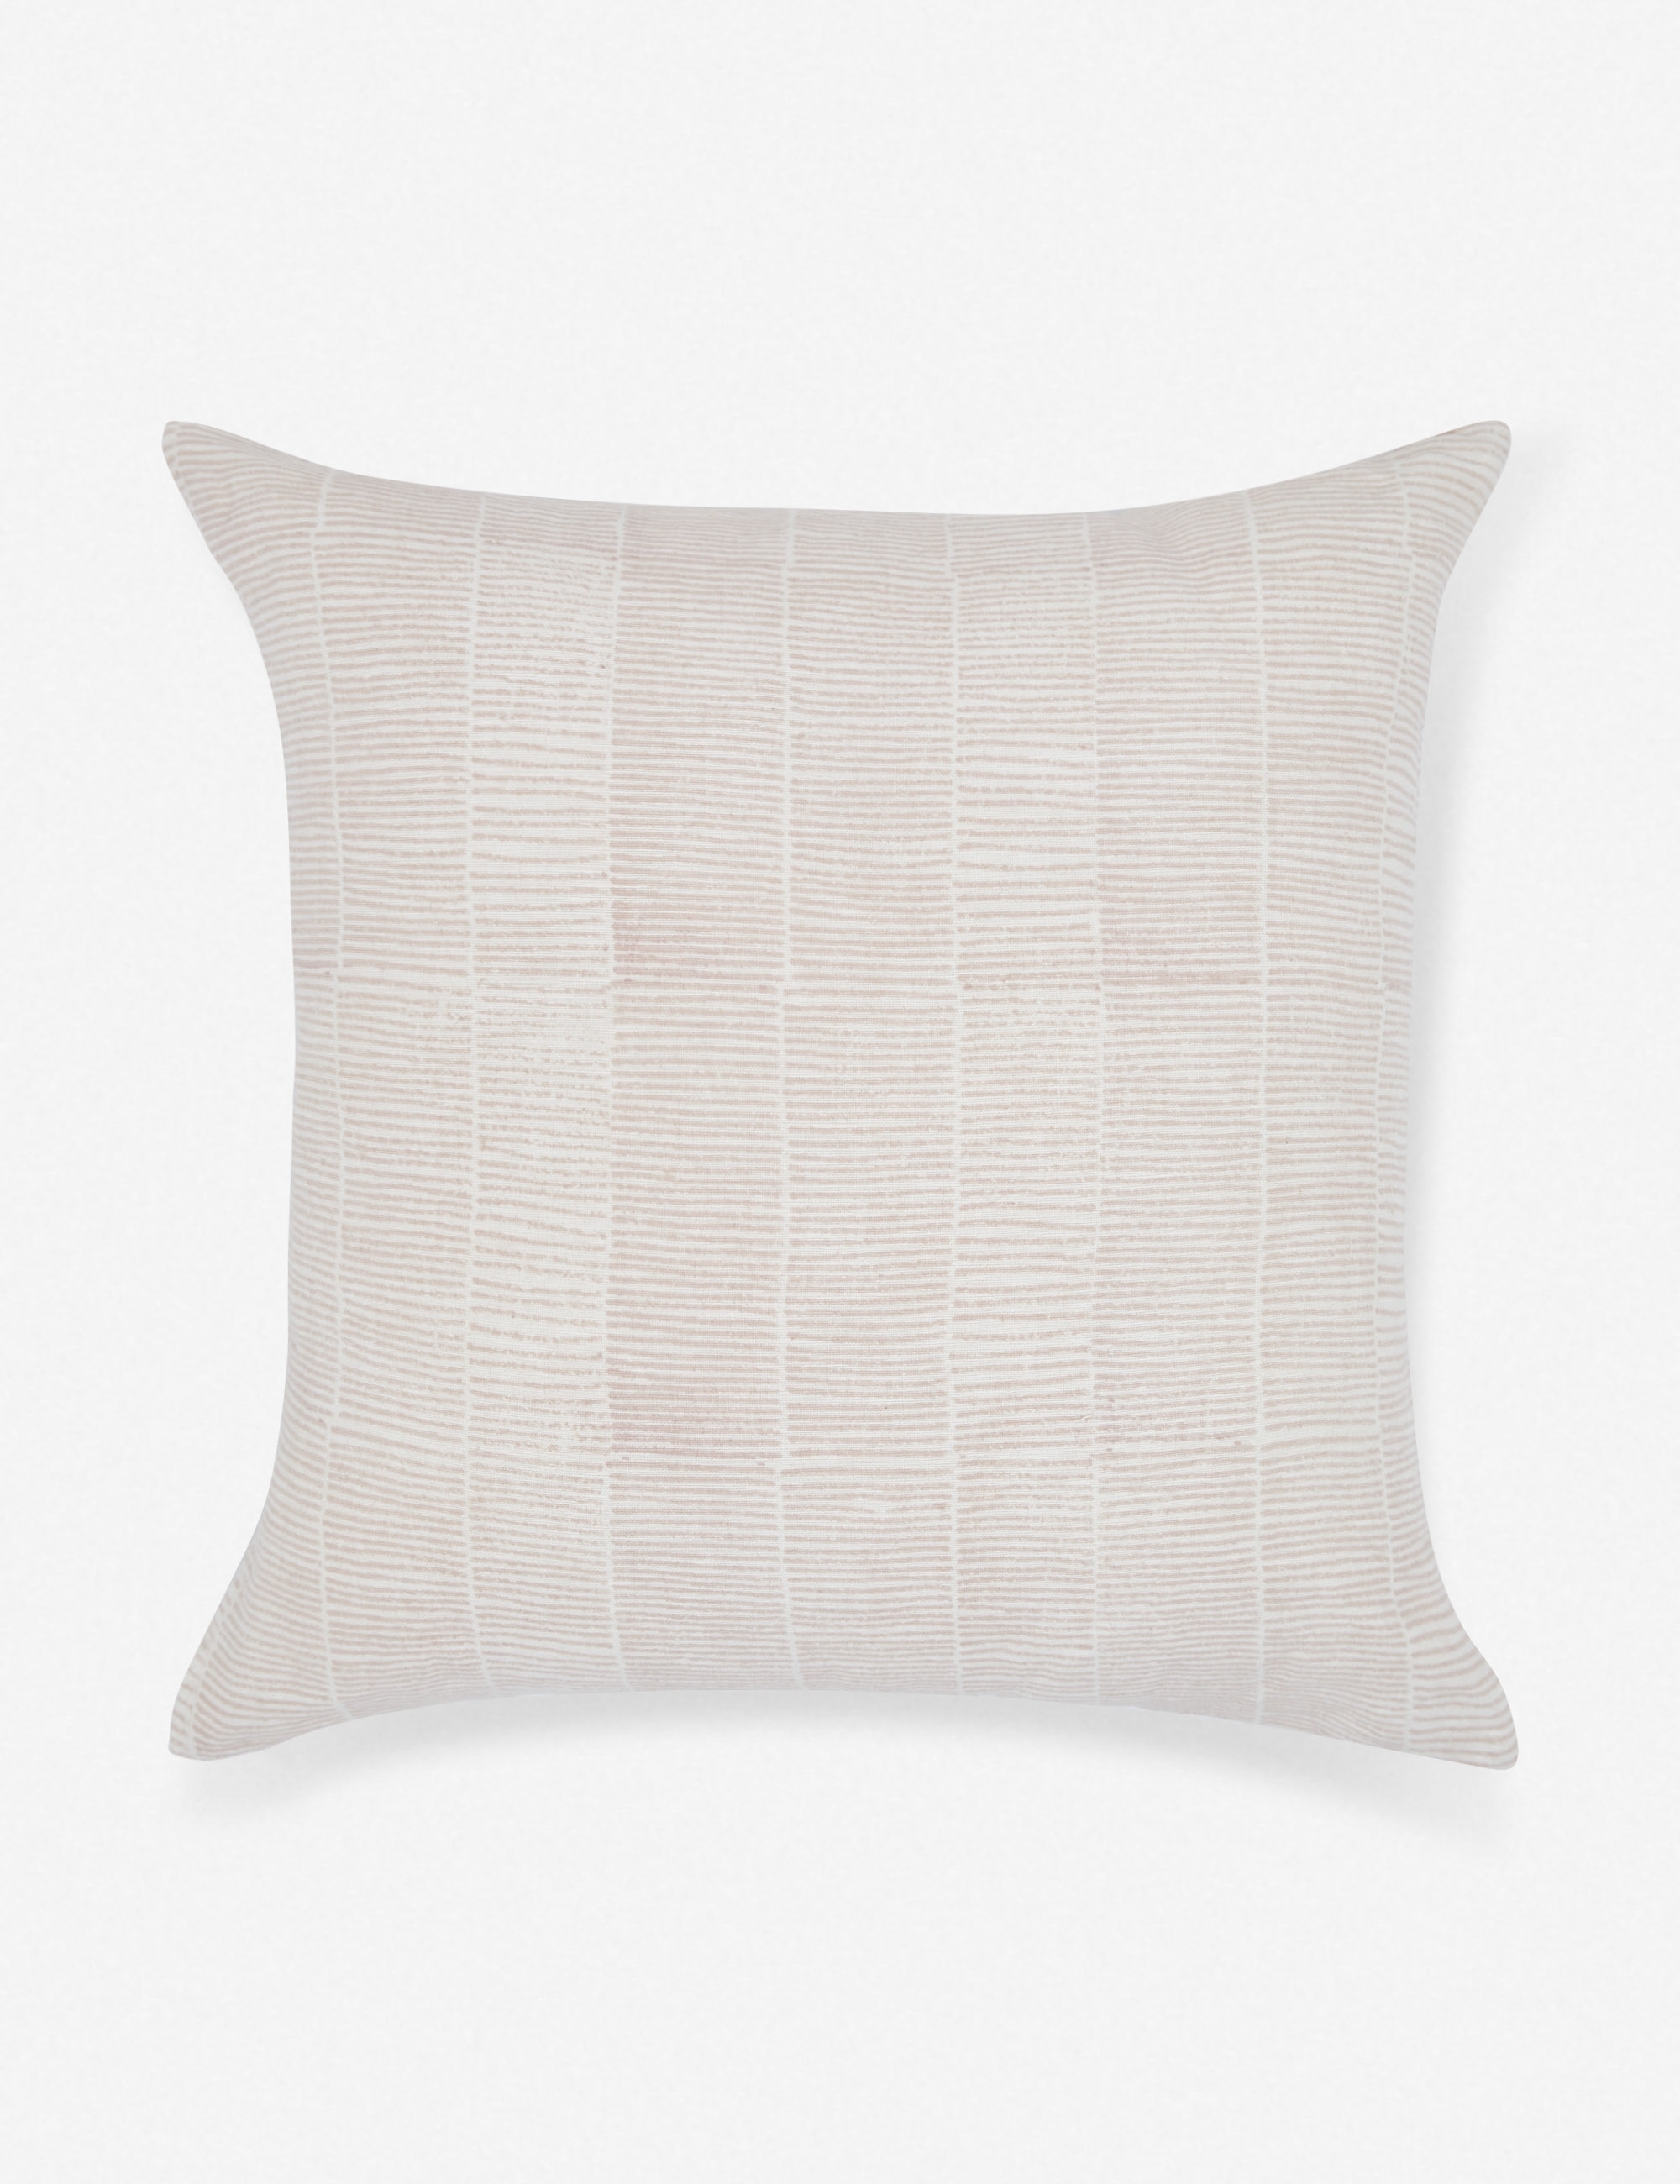 Claudette Pillow, Blush - Image 3